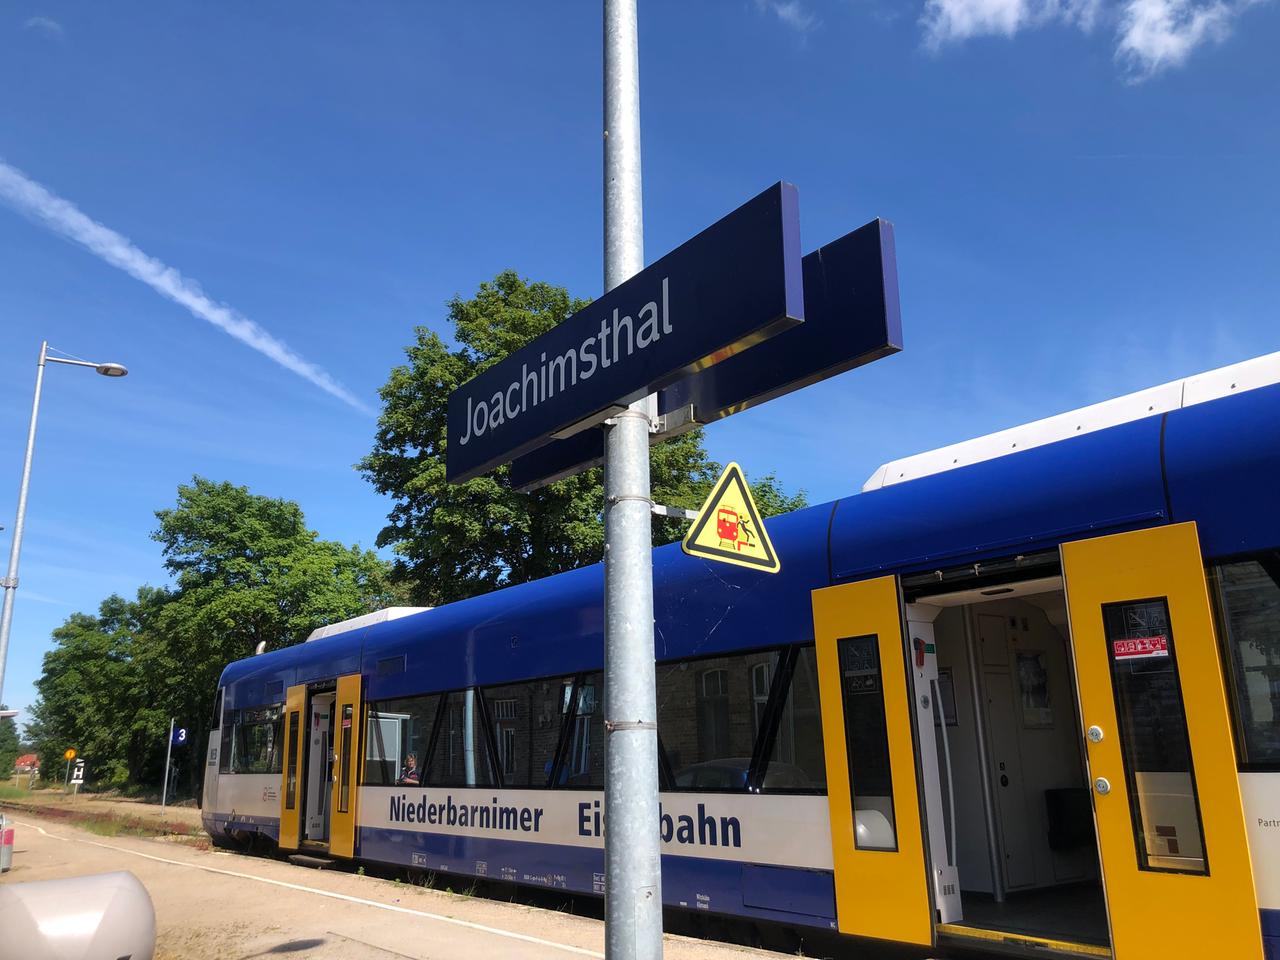 Ein Zug der Niederbarnimer Eisenbahn steht im Bahnhof Joachimsthal.